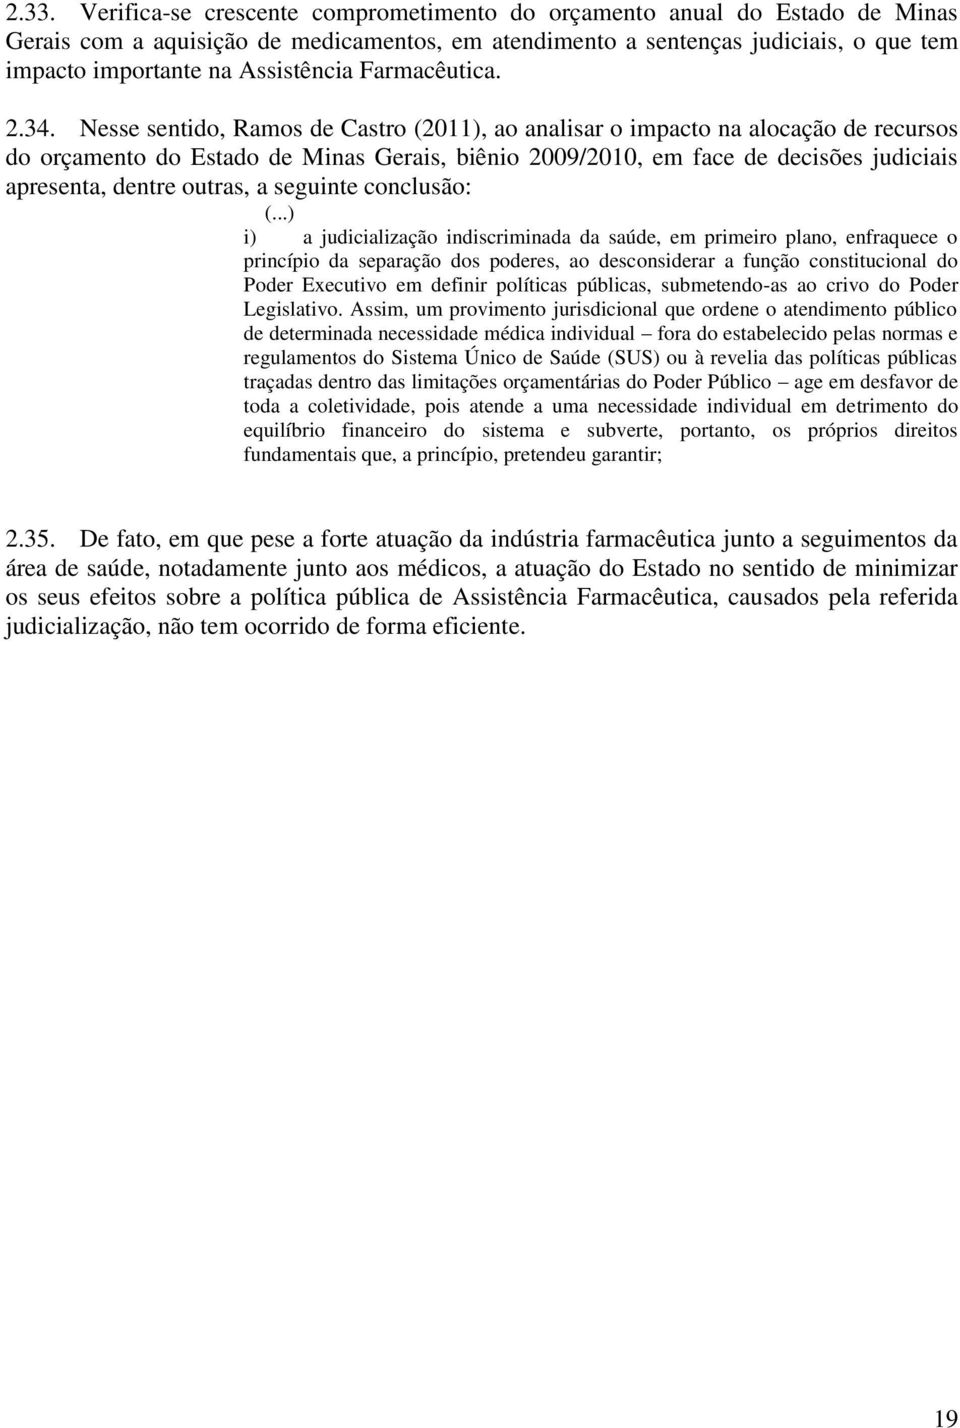 Nesse sentido, Ramos de Castro (2011), ao analisar o impacto na alocação de recursos do orçamento do Estado de Minas Gerais, biênio 2009/2010, em face de decisões judiciais apresenta, dentre outras,